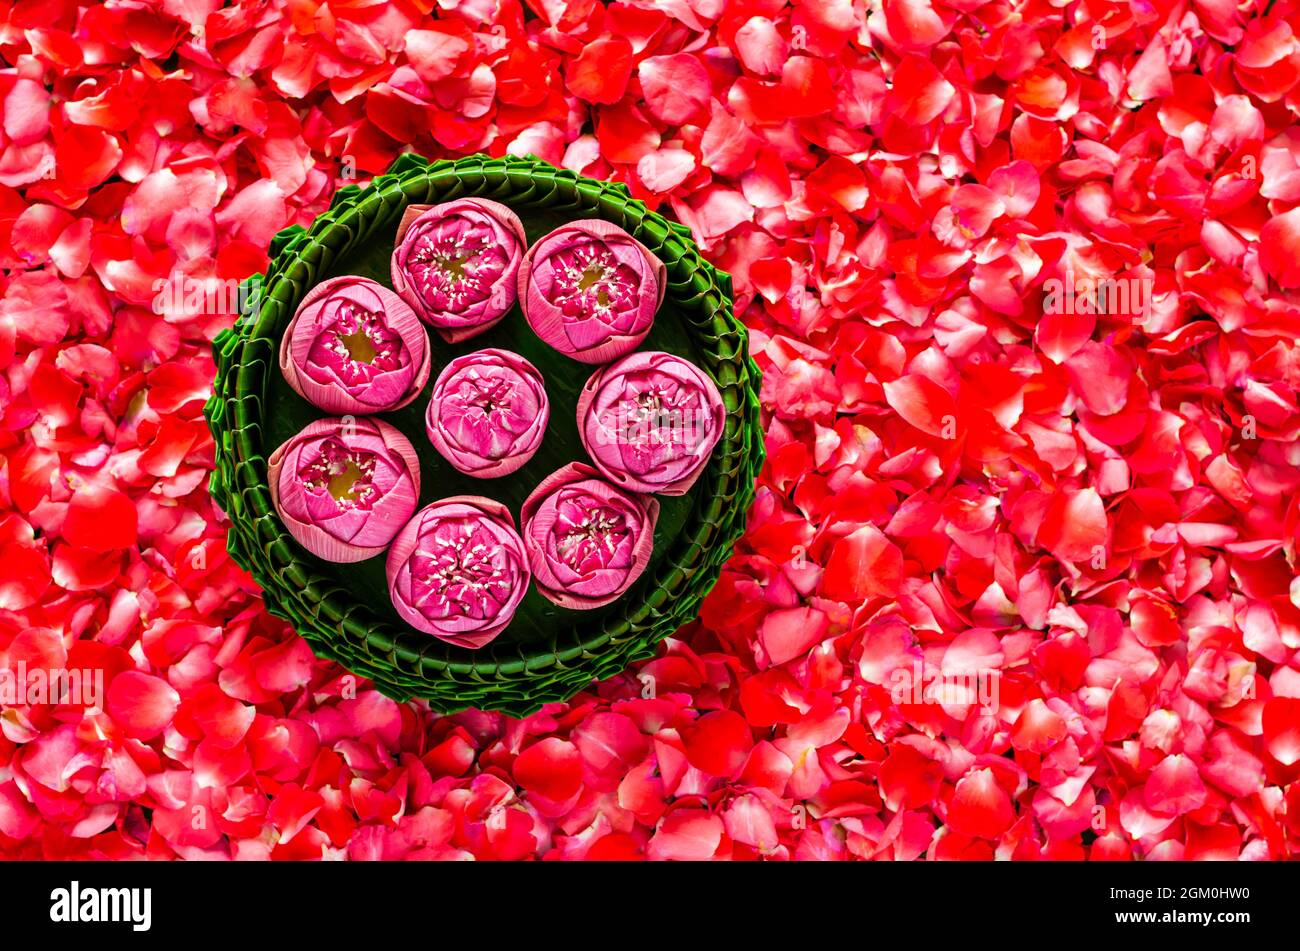 Foglia di banana Krathong con fiori di loto per la Thailandia Luna piena o festival Loy Krathong su sfondo rosso petali di rosa. Foto Stock